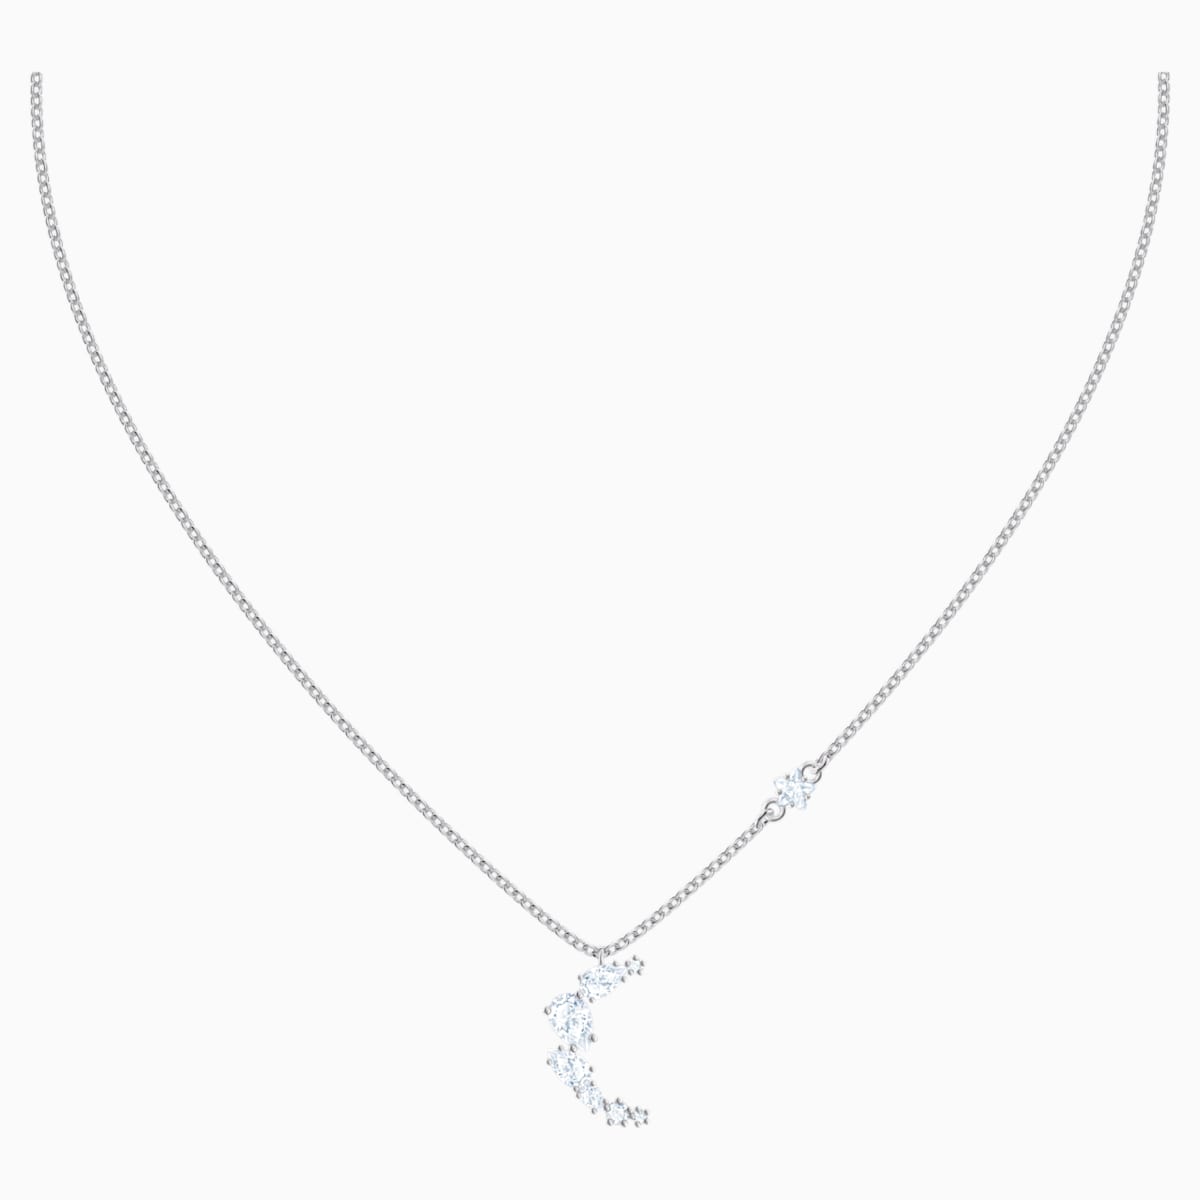 Penélope Cruz Moonsun Necklace, White, Rhodium plated - Swarovski, 5508442